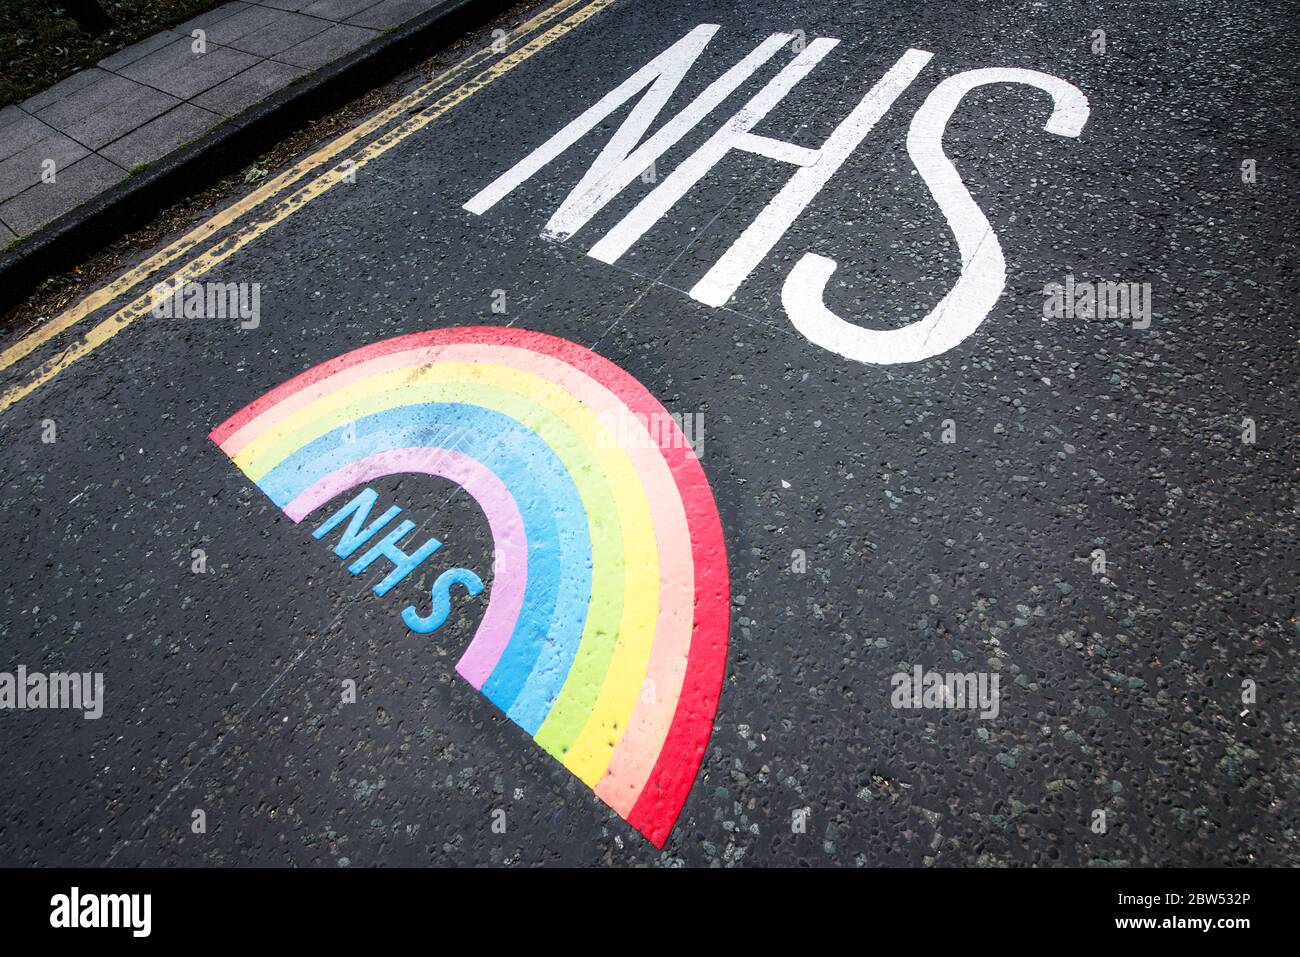 Neu bemalte Straßenmarkierungen Vielen Dank NHS und ein Regenbogen wurden vor einem medizinischen Zentrum in Manchester gemalt, um allen Mitarbeitern des NHS zu danken. Stockfoto